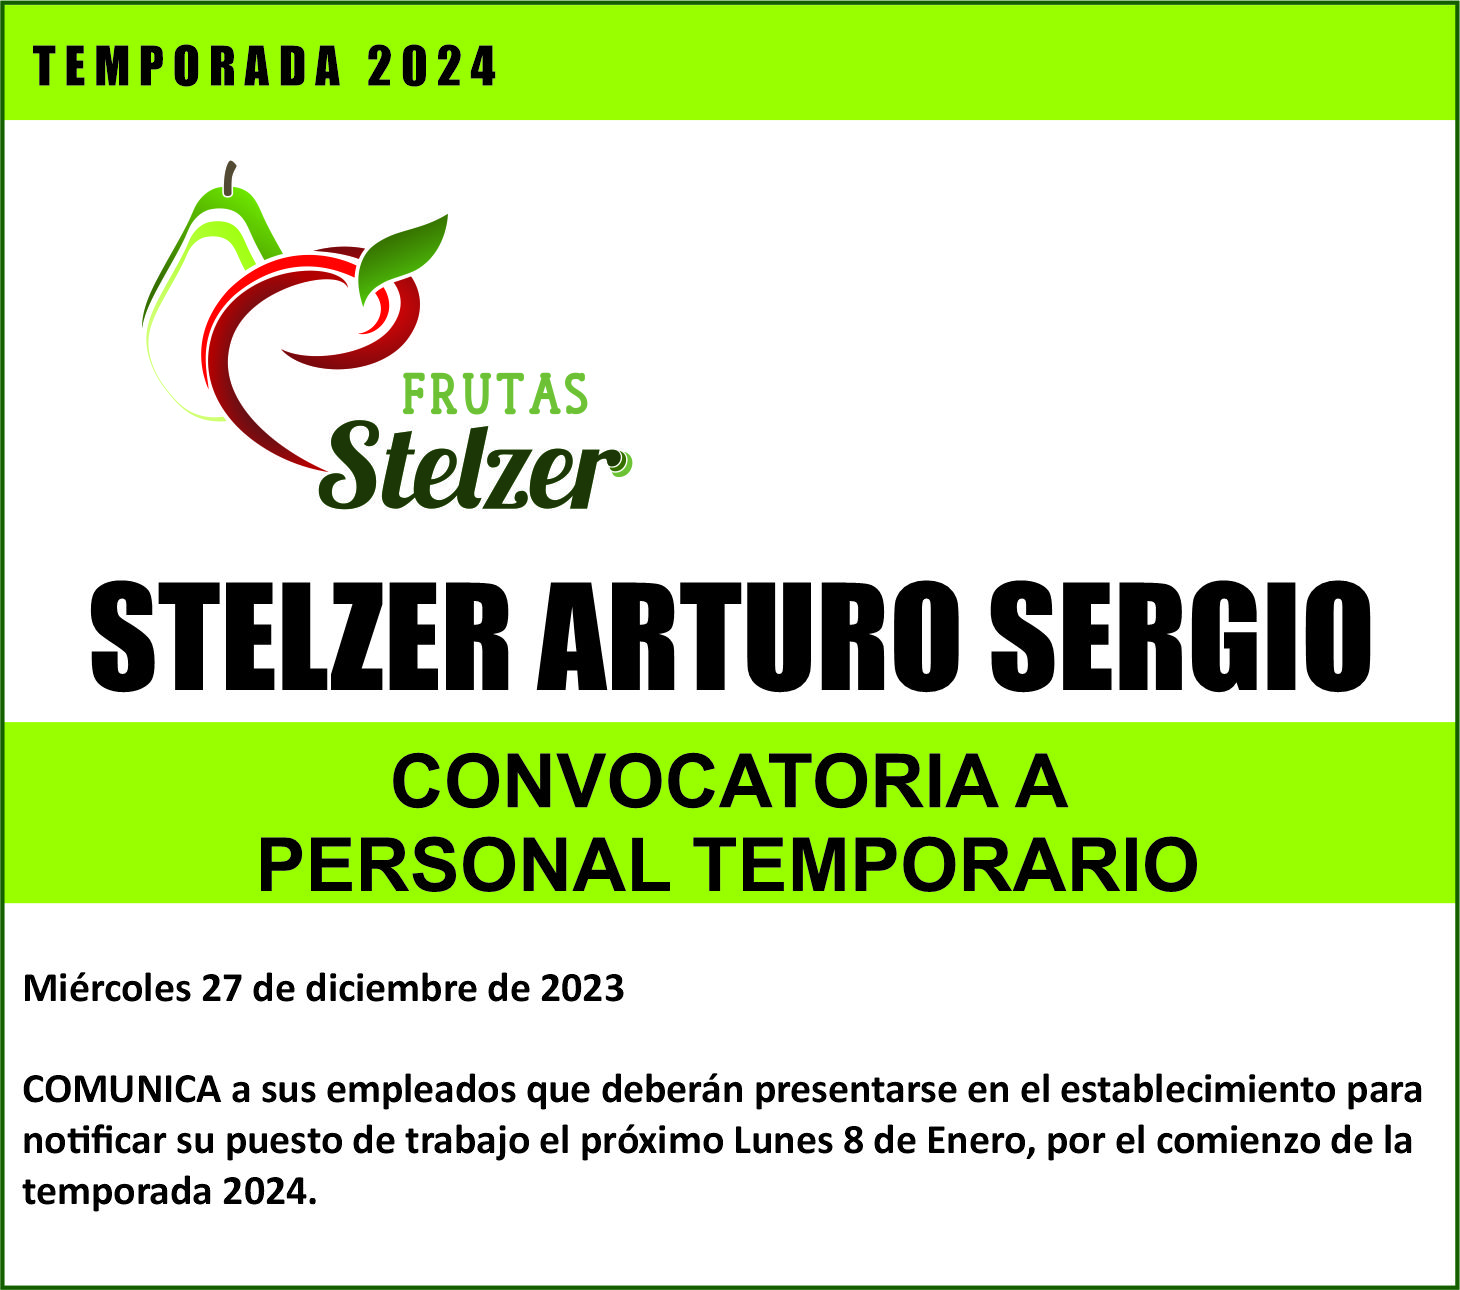 ARTURO SERGIO STELZER convoca al personal para dar inicio a la temporada 2024